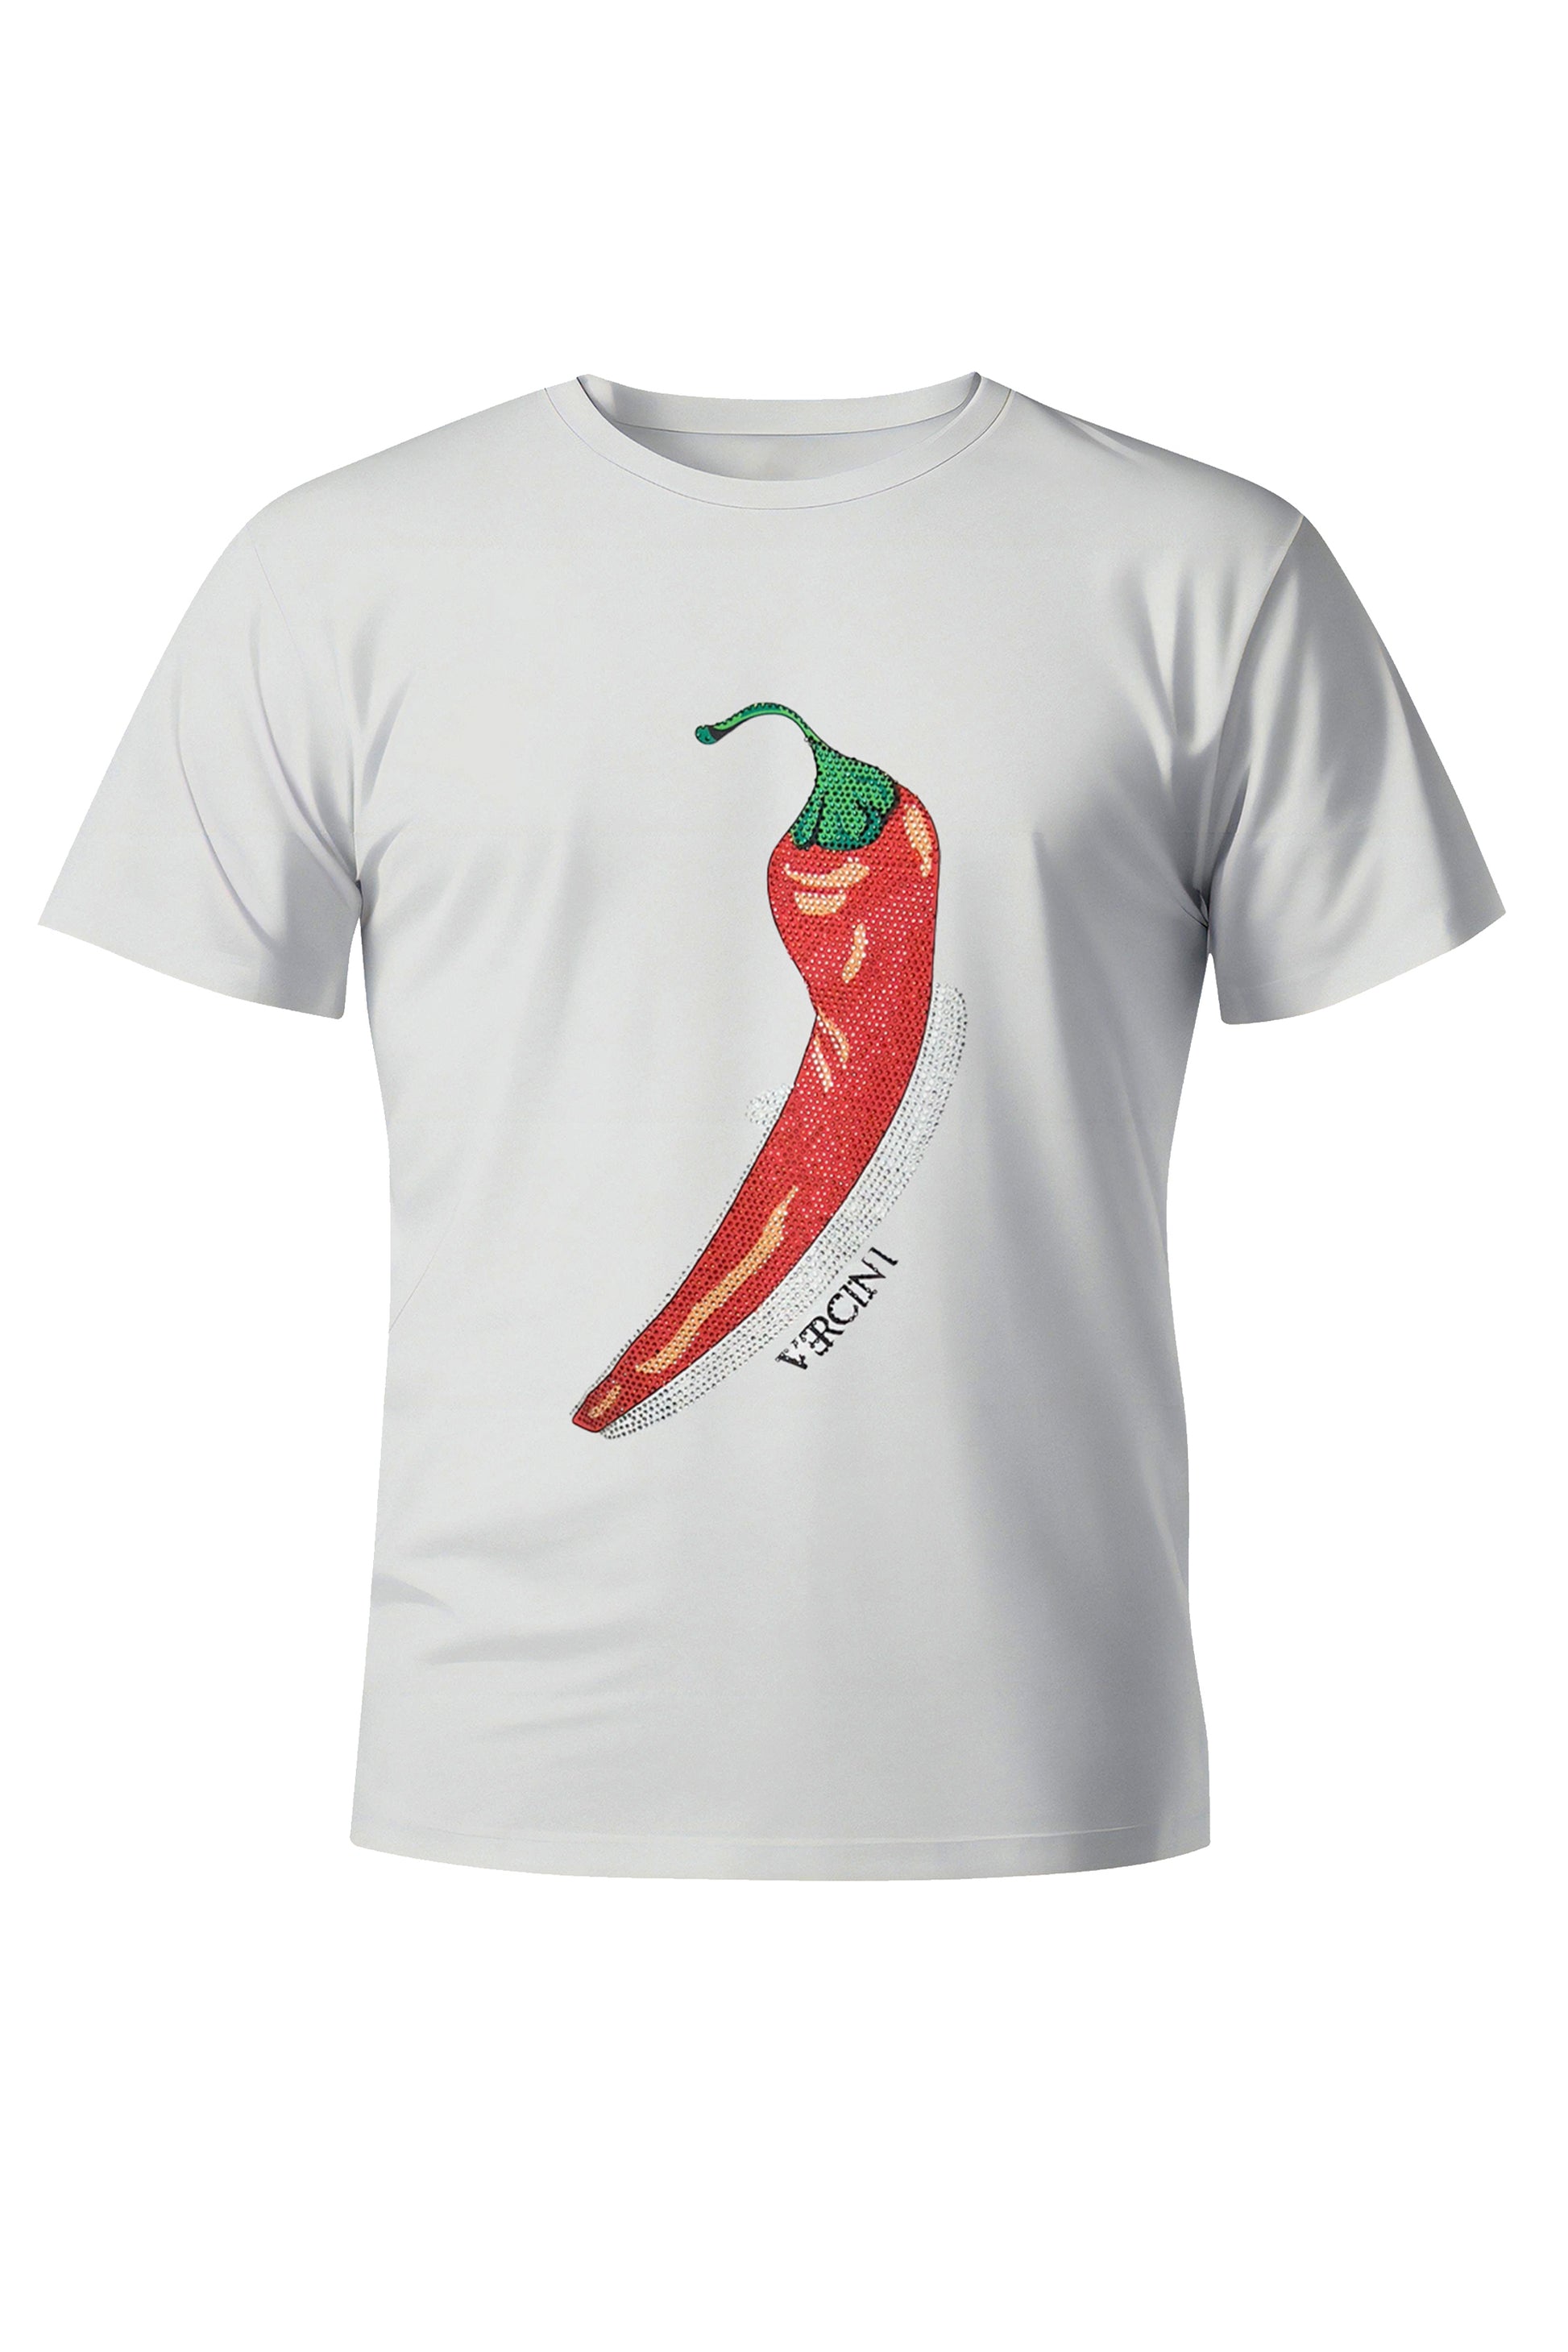 Spice Whisperer Chili Pepper T-Shirt VERCINI T-SHIRTS Shirt Collection Vercini